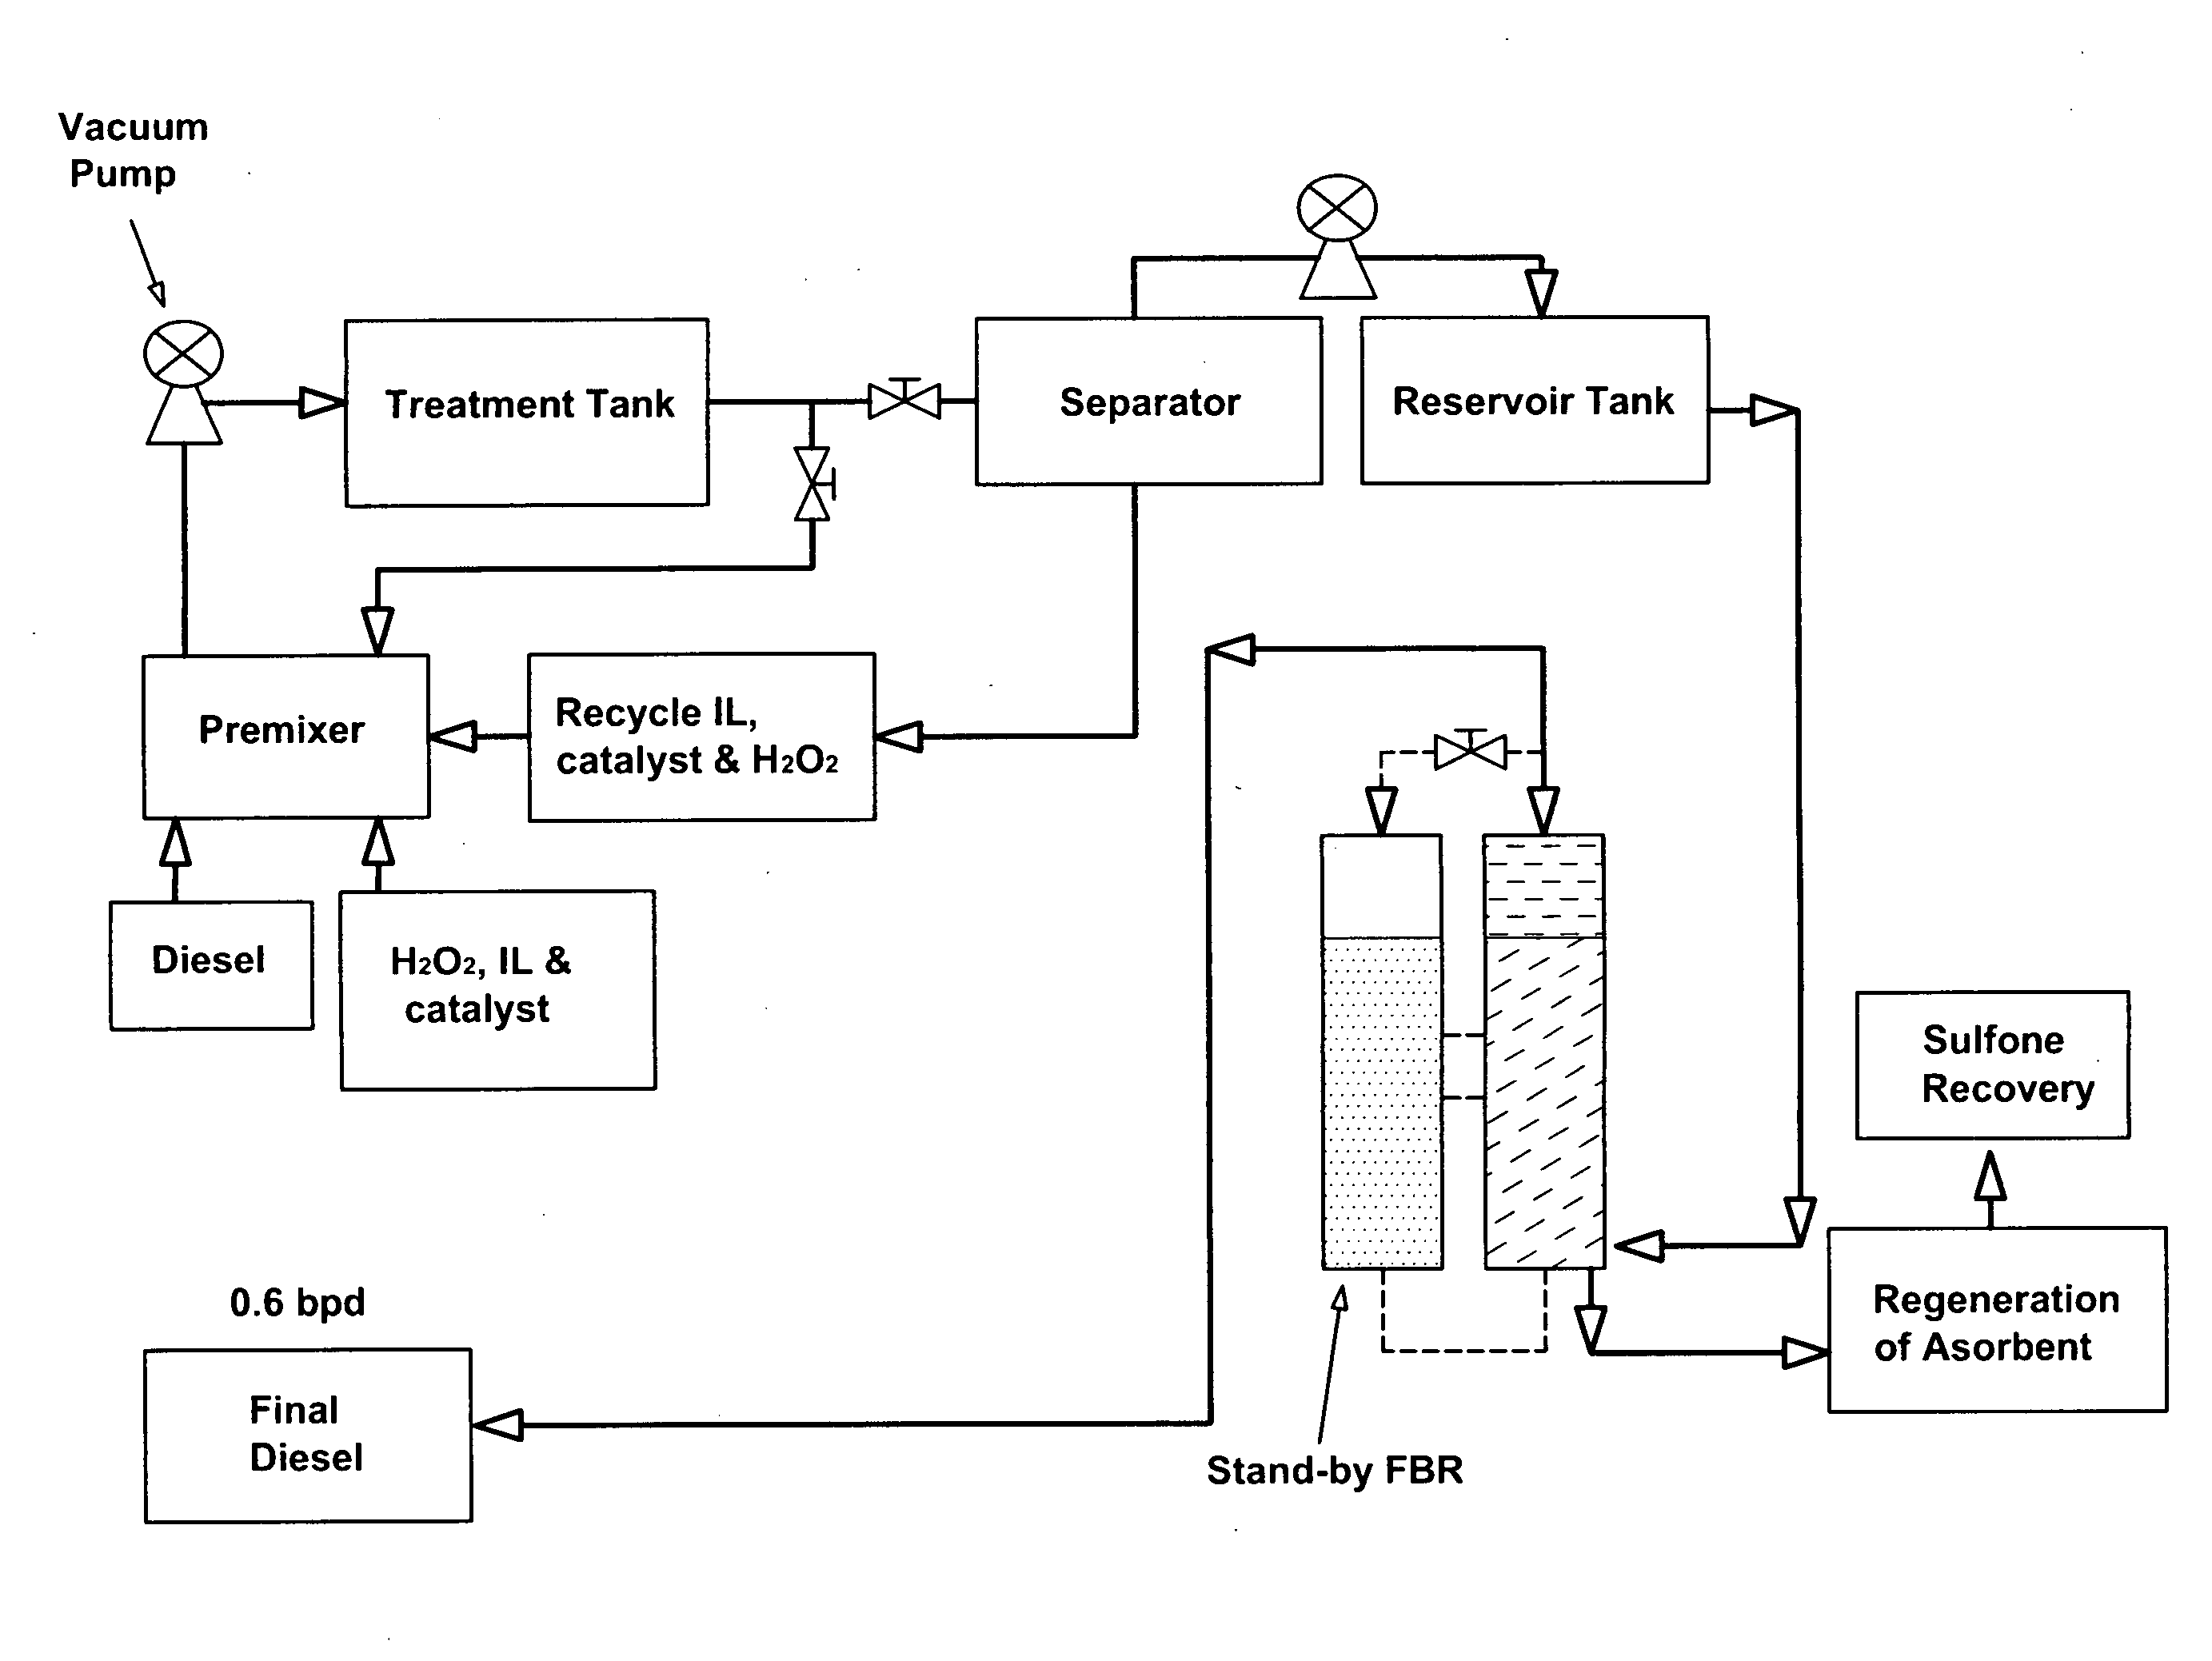 Diesel desulfurization method